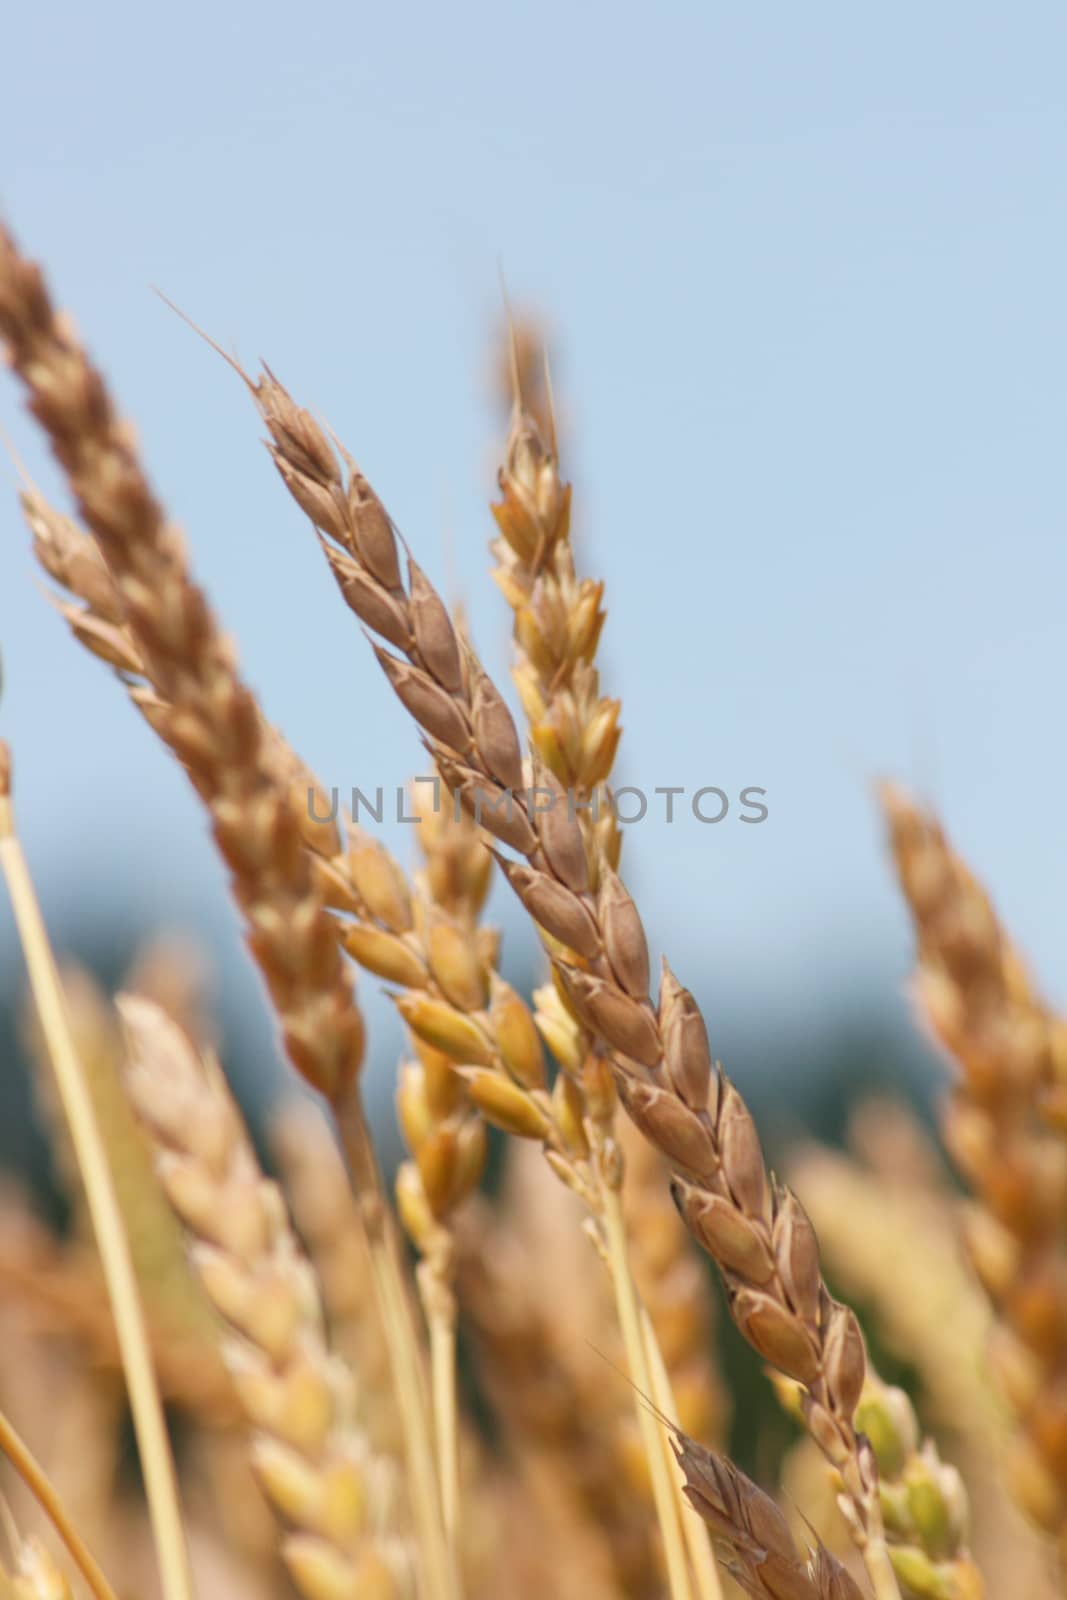 Wheat ears against the blue sky seen